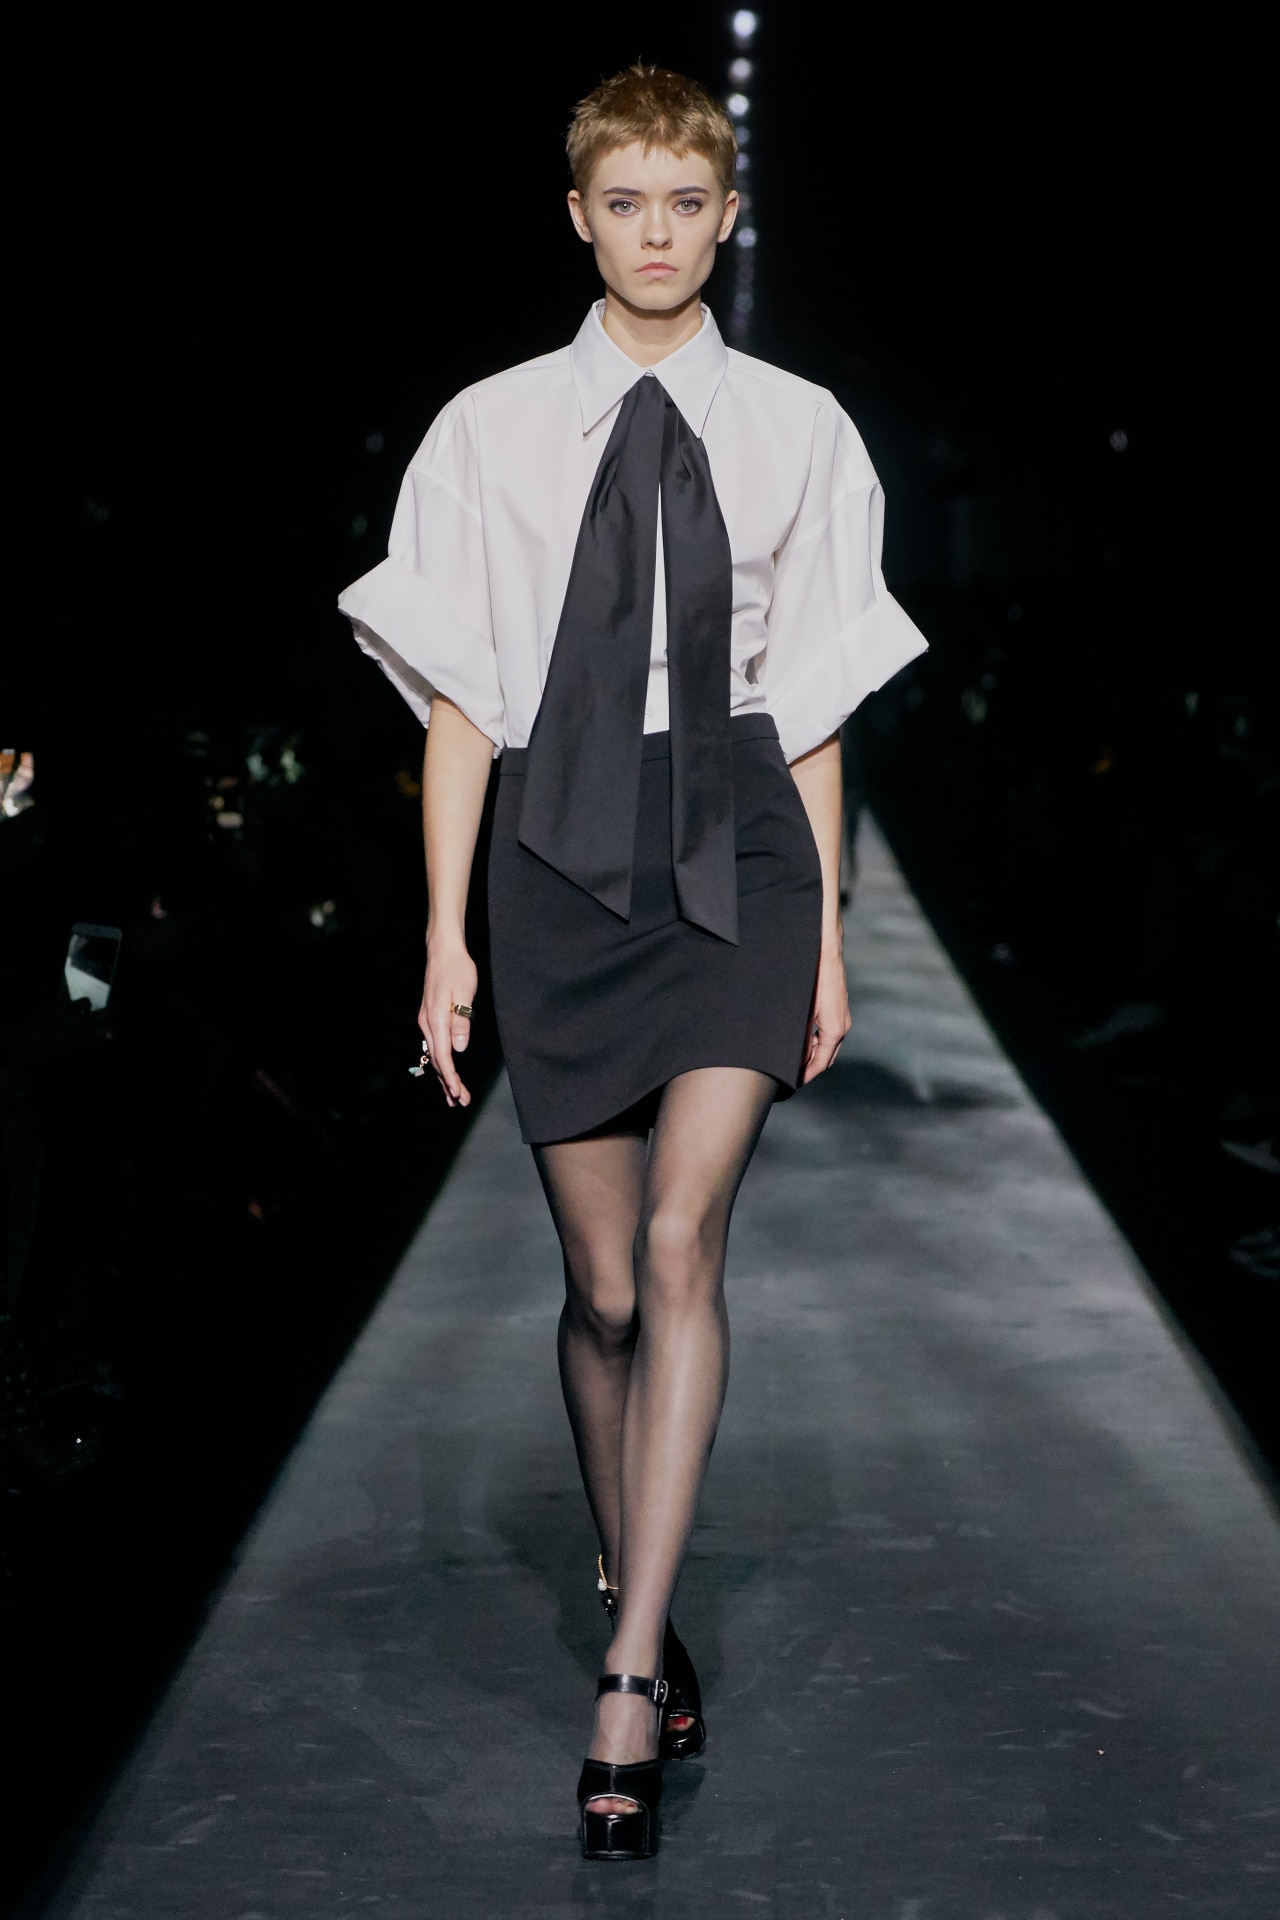 - \'19\'20 Menkes Suzy ready-to-wear autumn/winter Australia Vogue Fashion Week at Paris